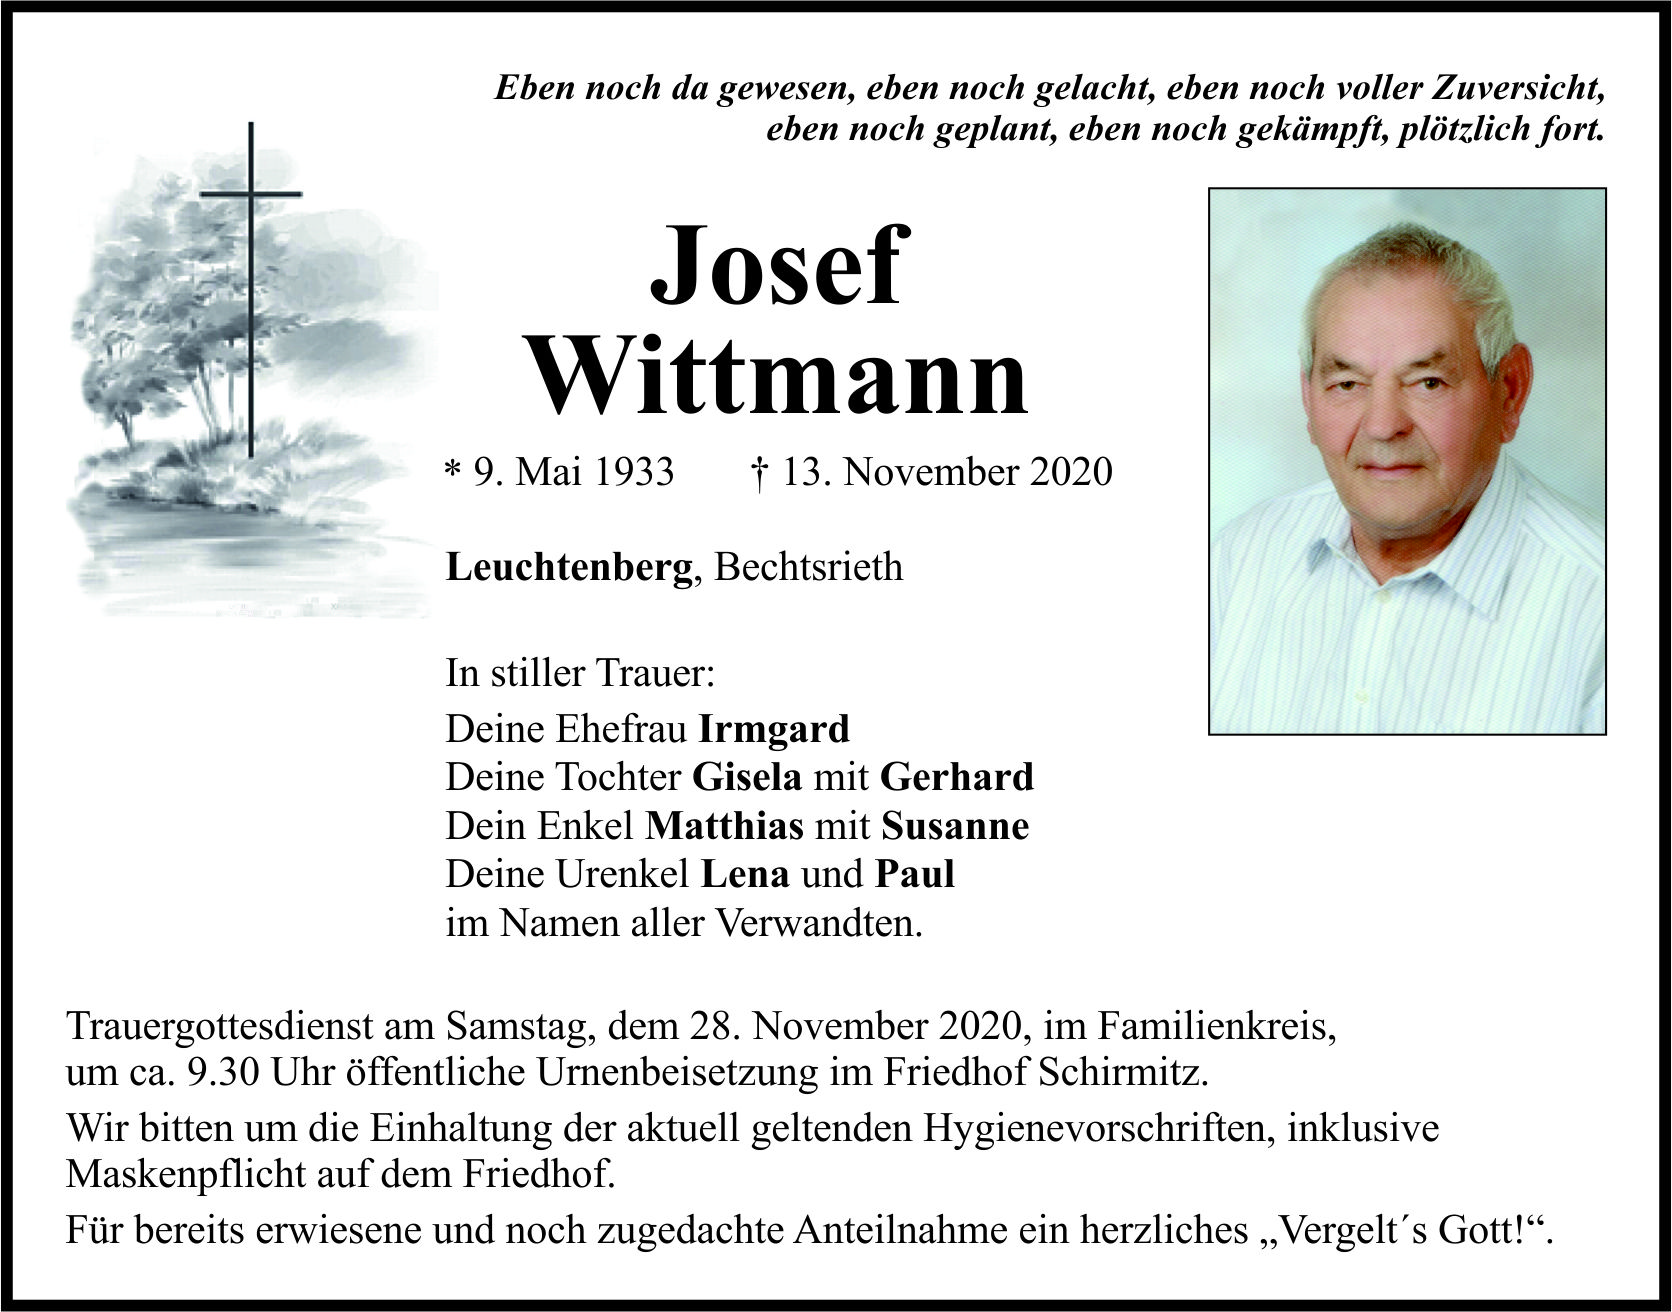 Traueranzeige Josef Wittmann, Leuchtenberg